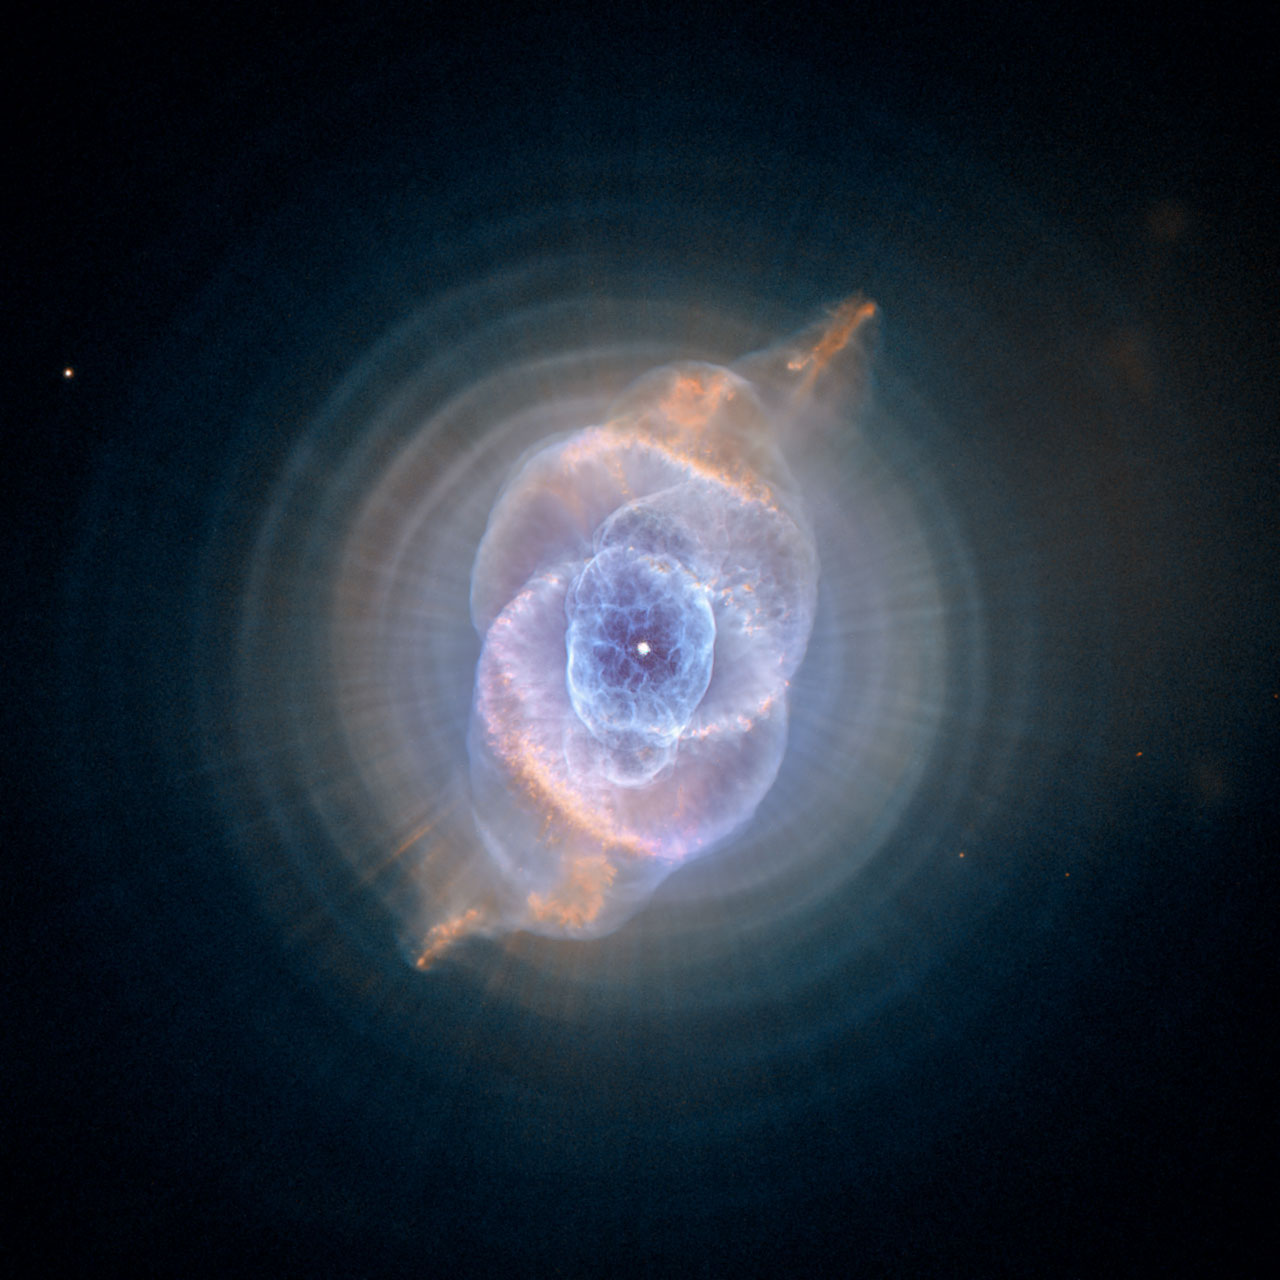 Cat's eye nebula